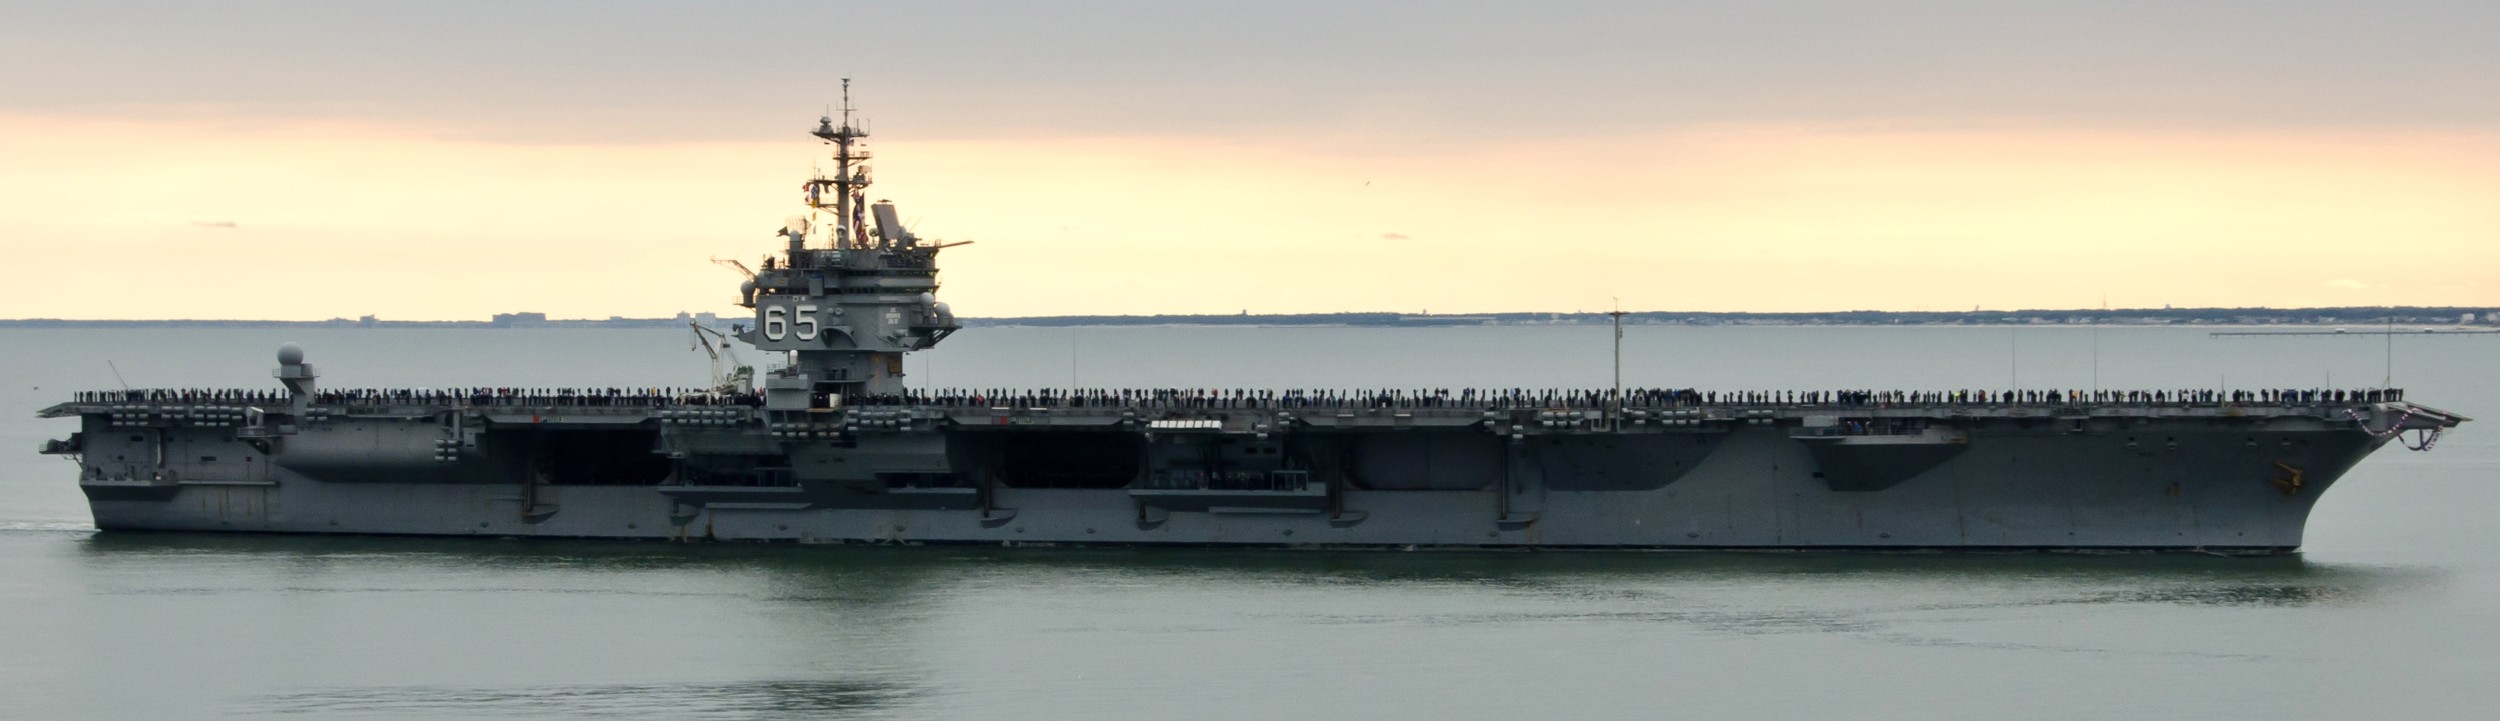 cvn-65 uss enterprise aircraft carrier us navy norfolk 2012 13